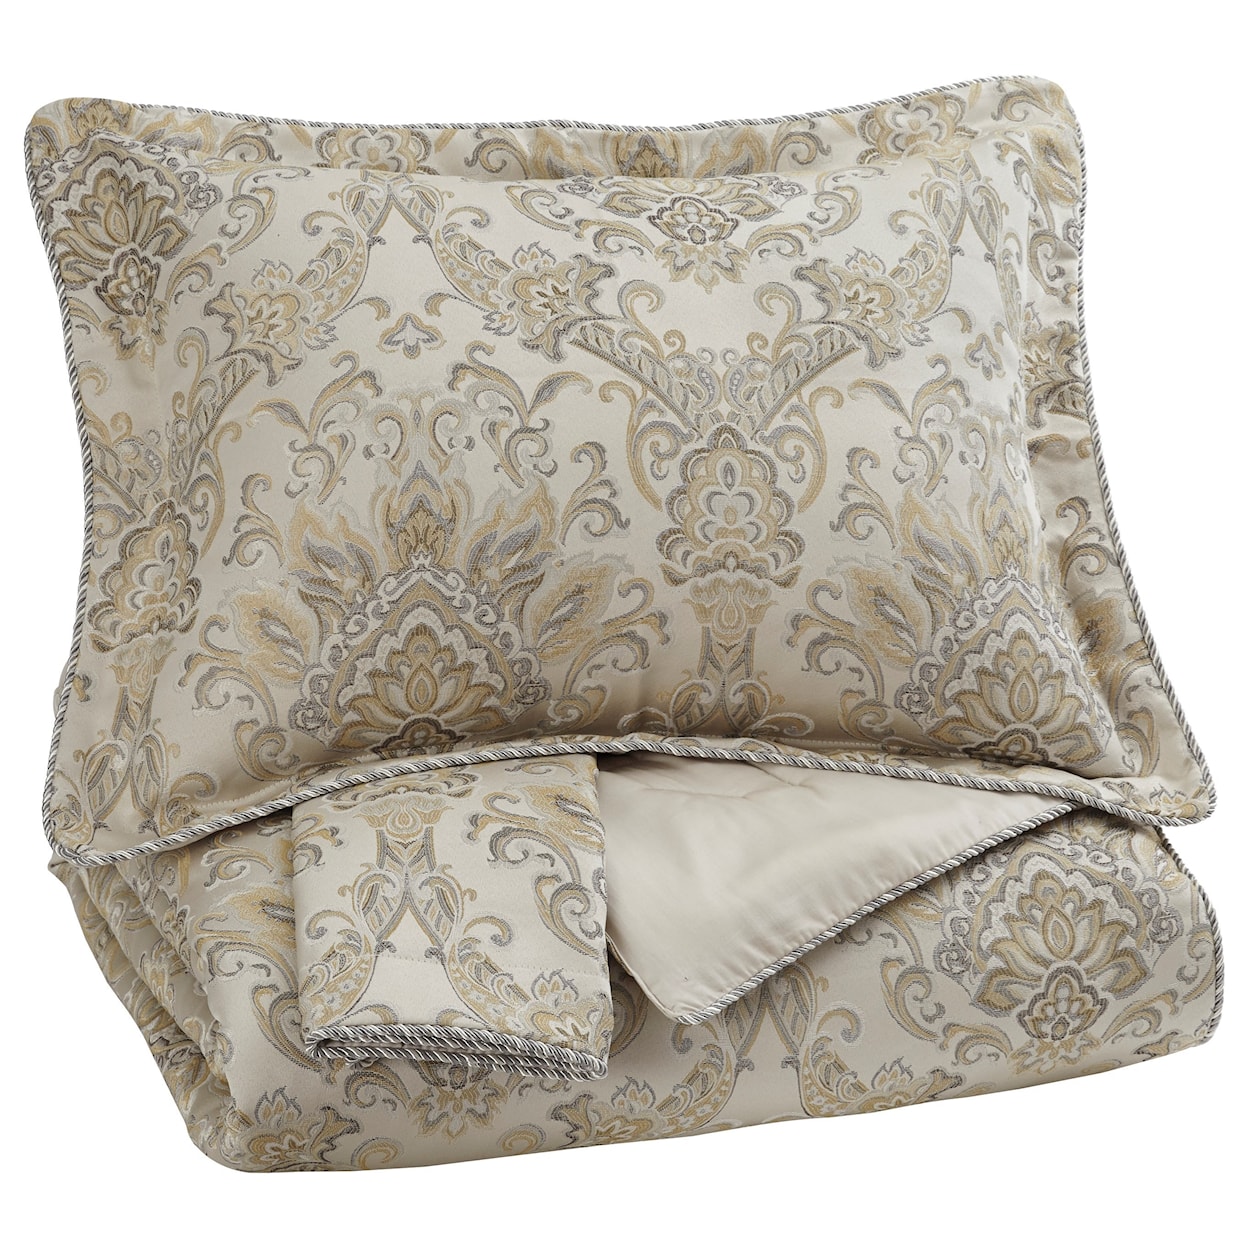 Ashley Furniture Signature Design Bedding Sets King Amil Ivory/Gold Comforter Set